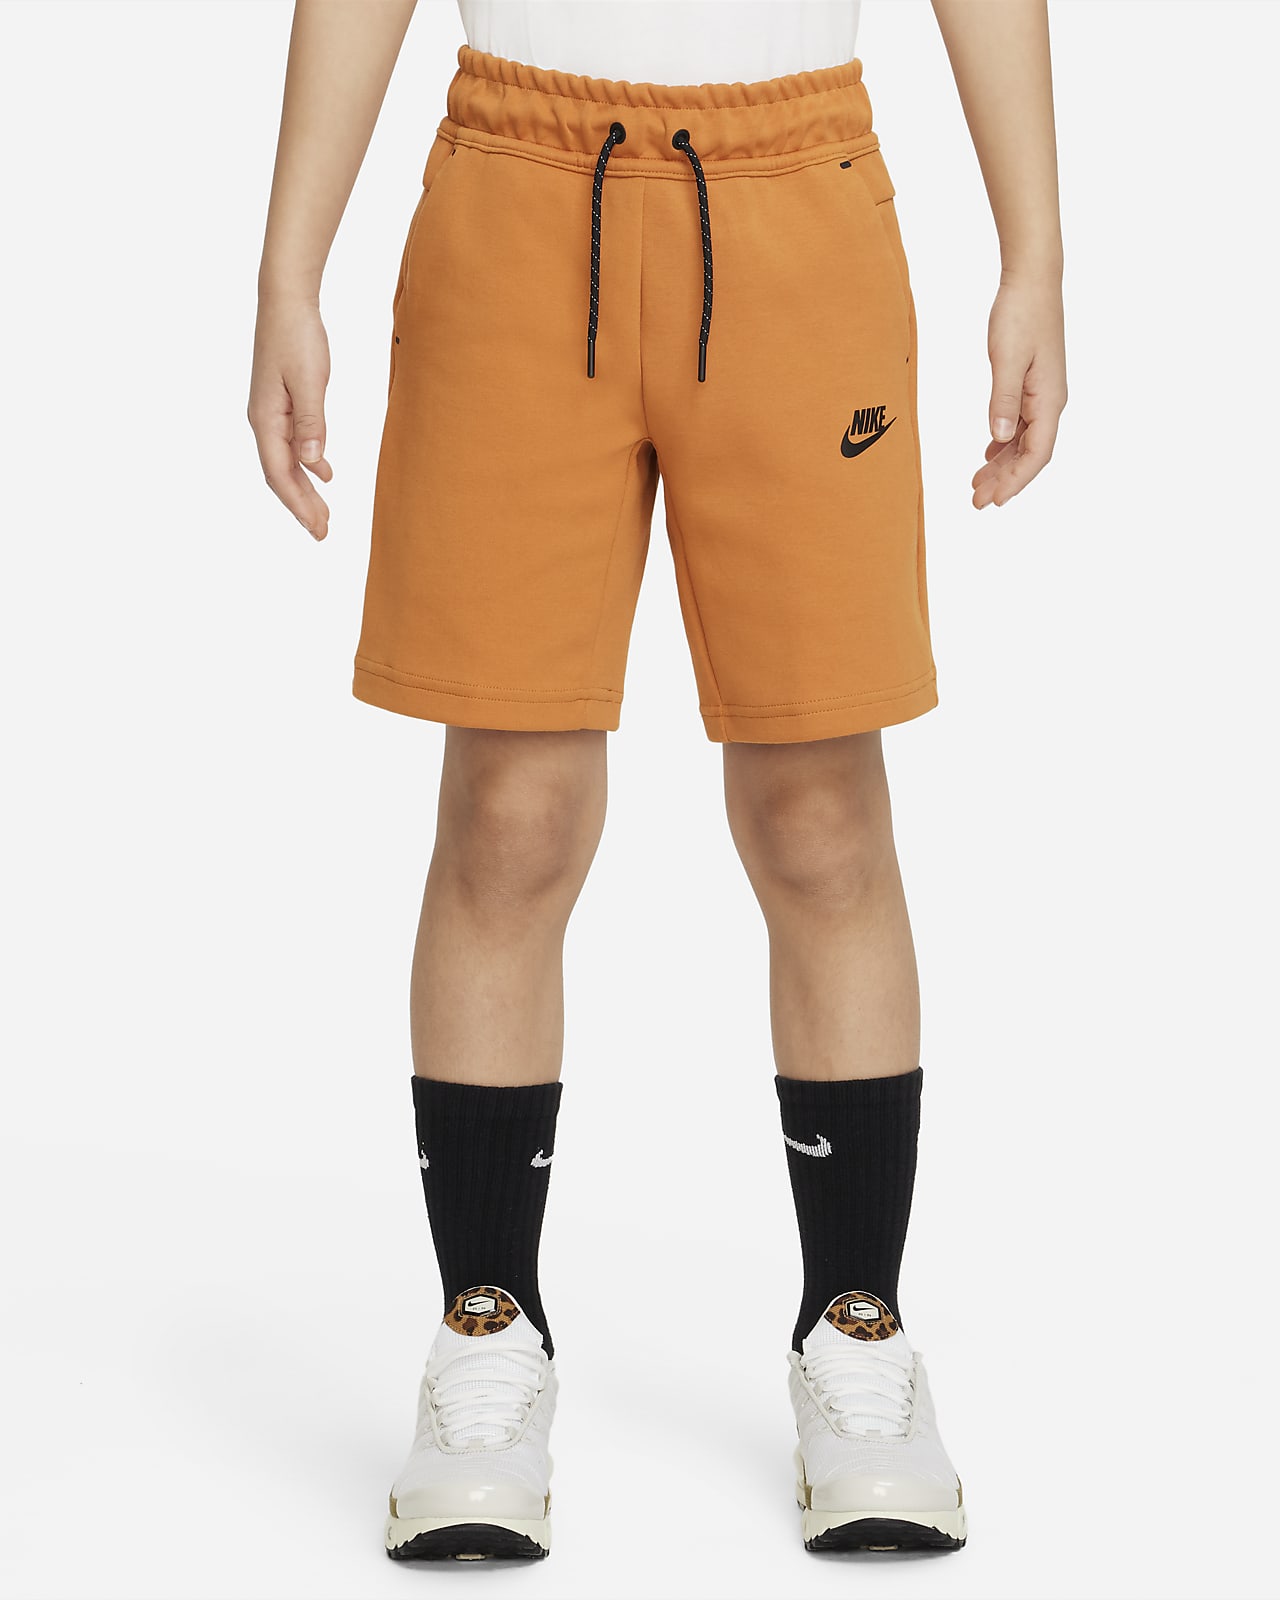 Integraal sjaal vergaan Nike Sportswear Tech Fleece Jongensshorts. Nike NL